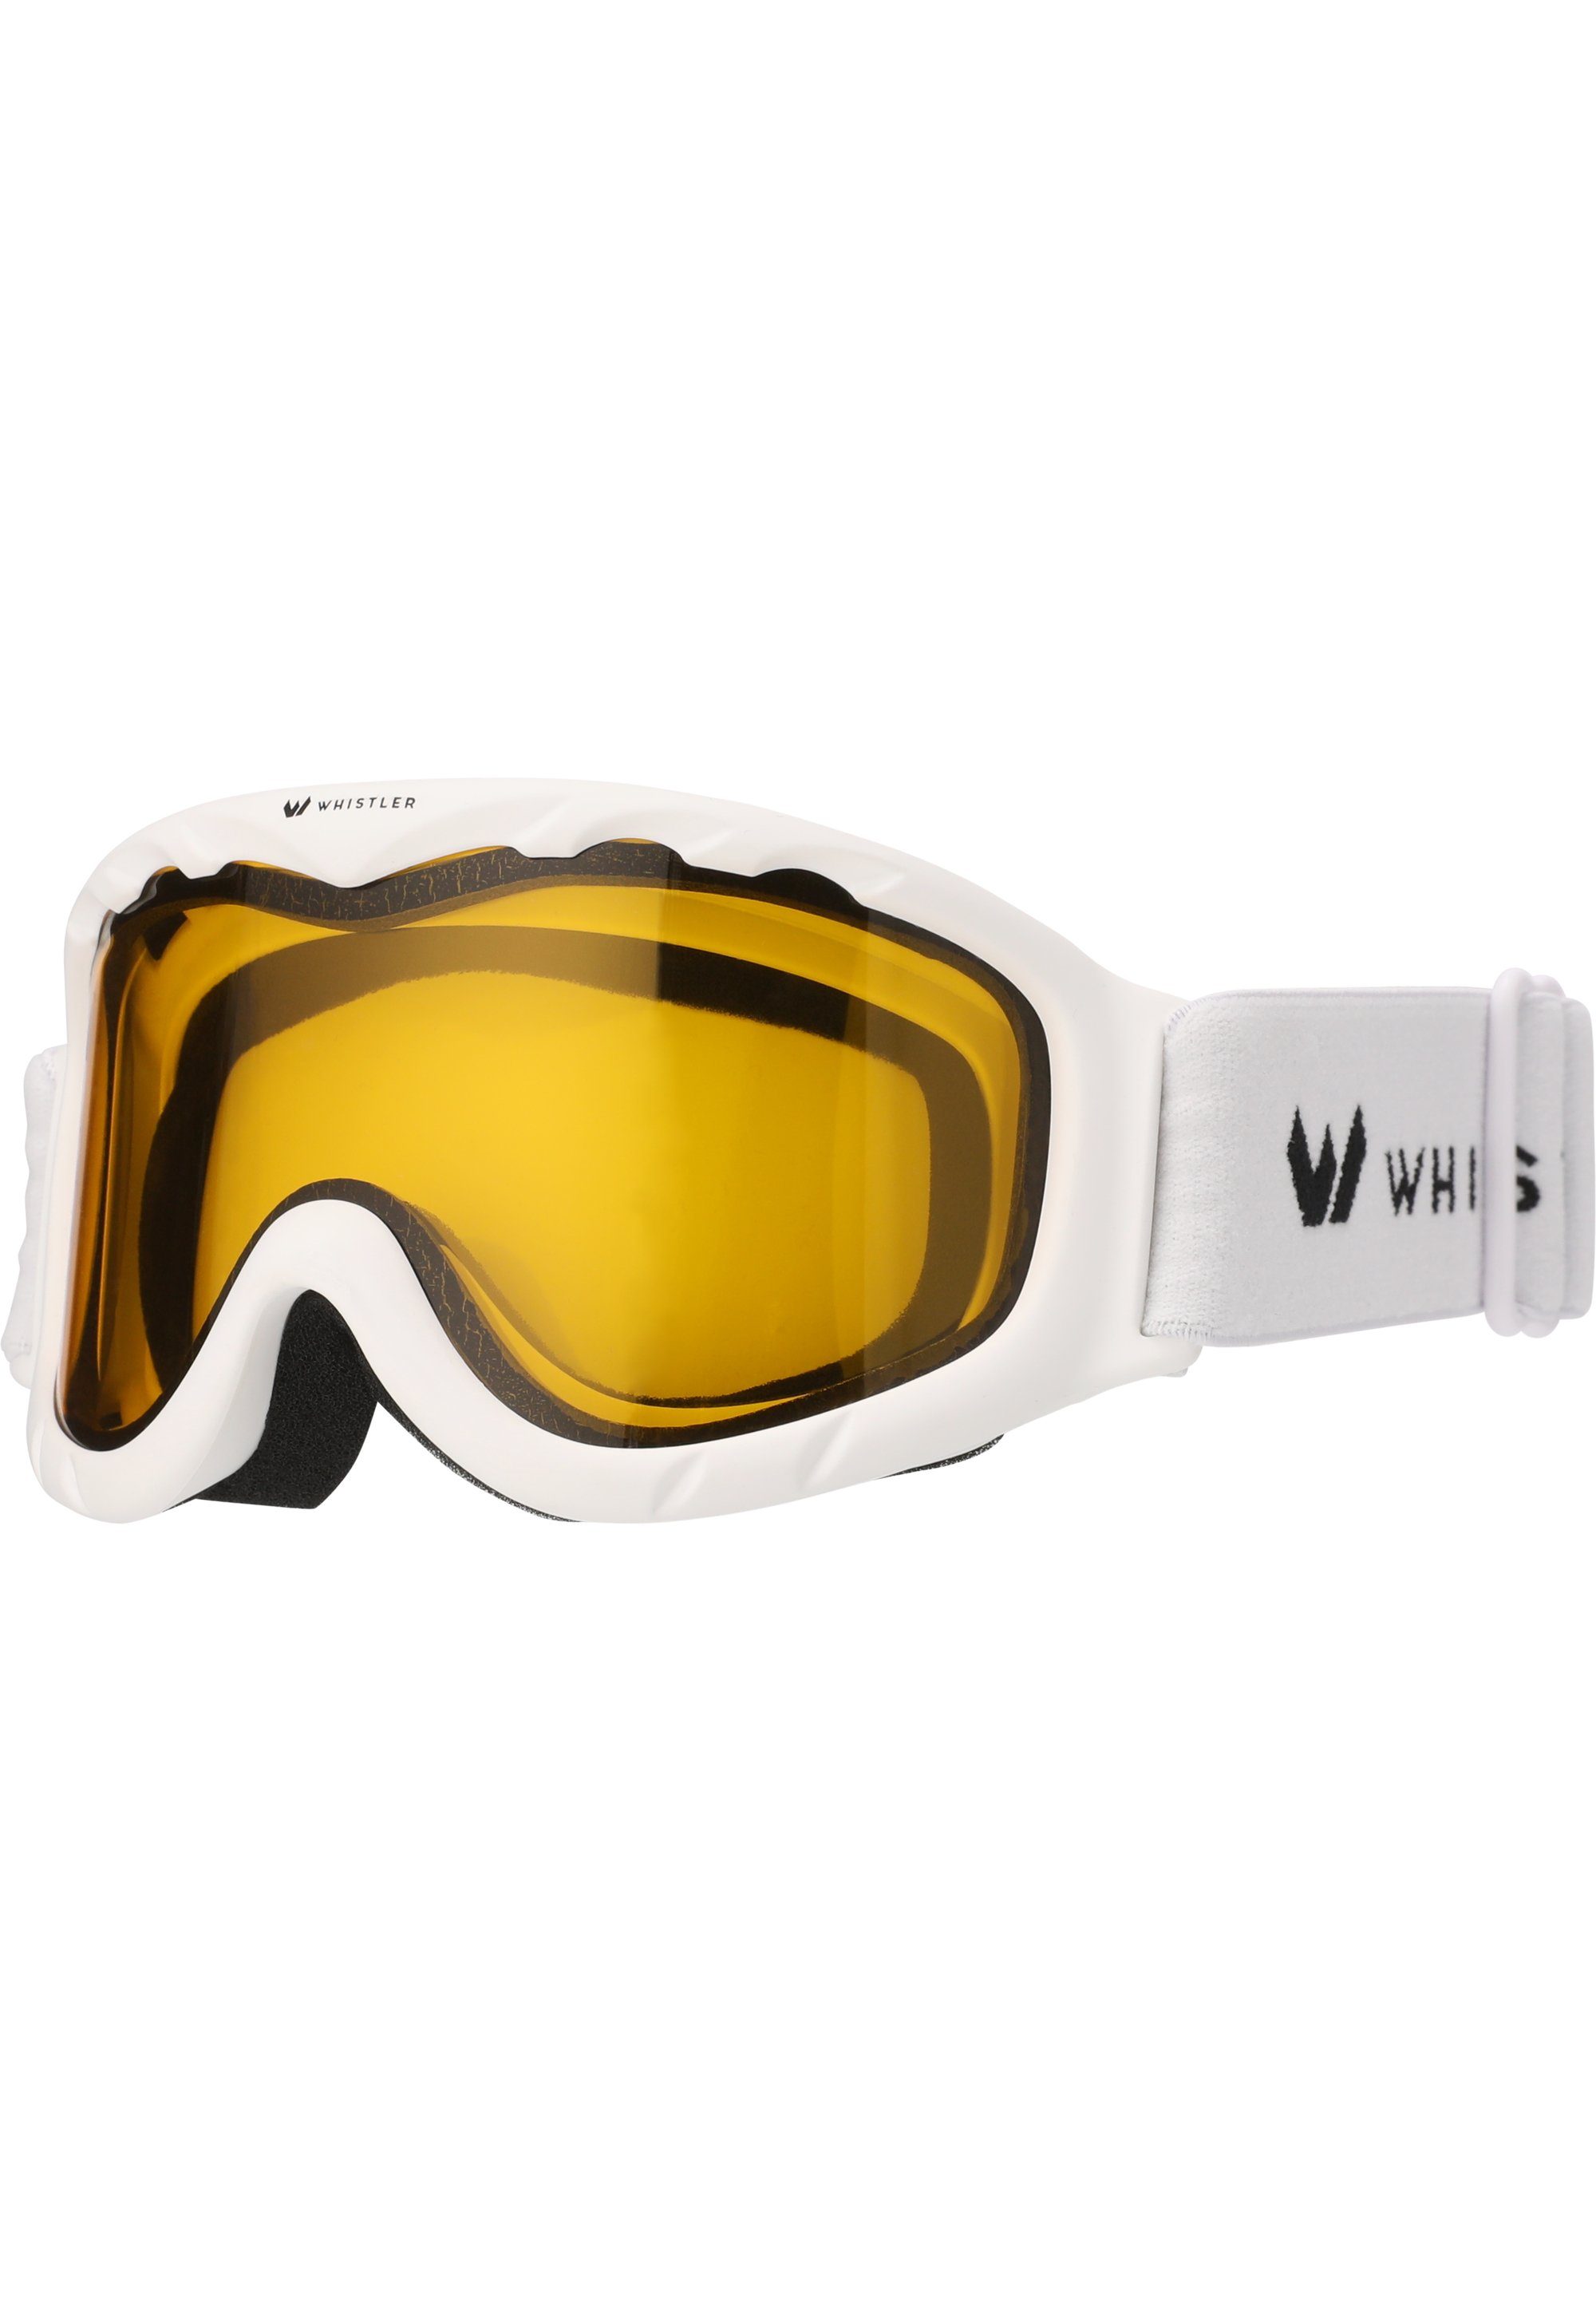 WHISTLER Skibrille Jr. weiß WS300 Anti-Fog-Beschichtung Goggle, Ski mit